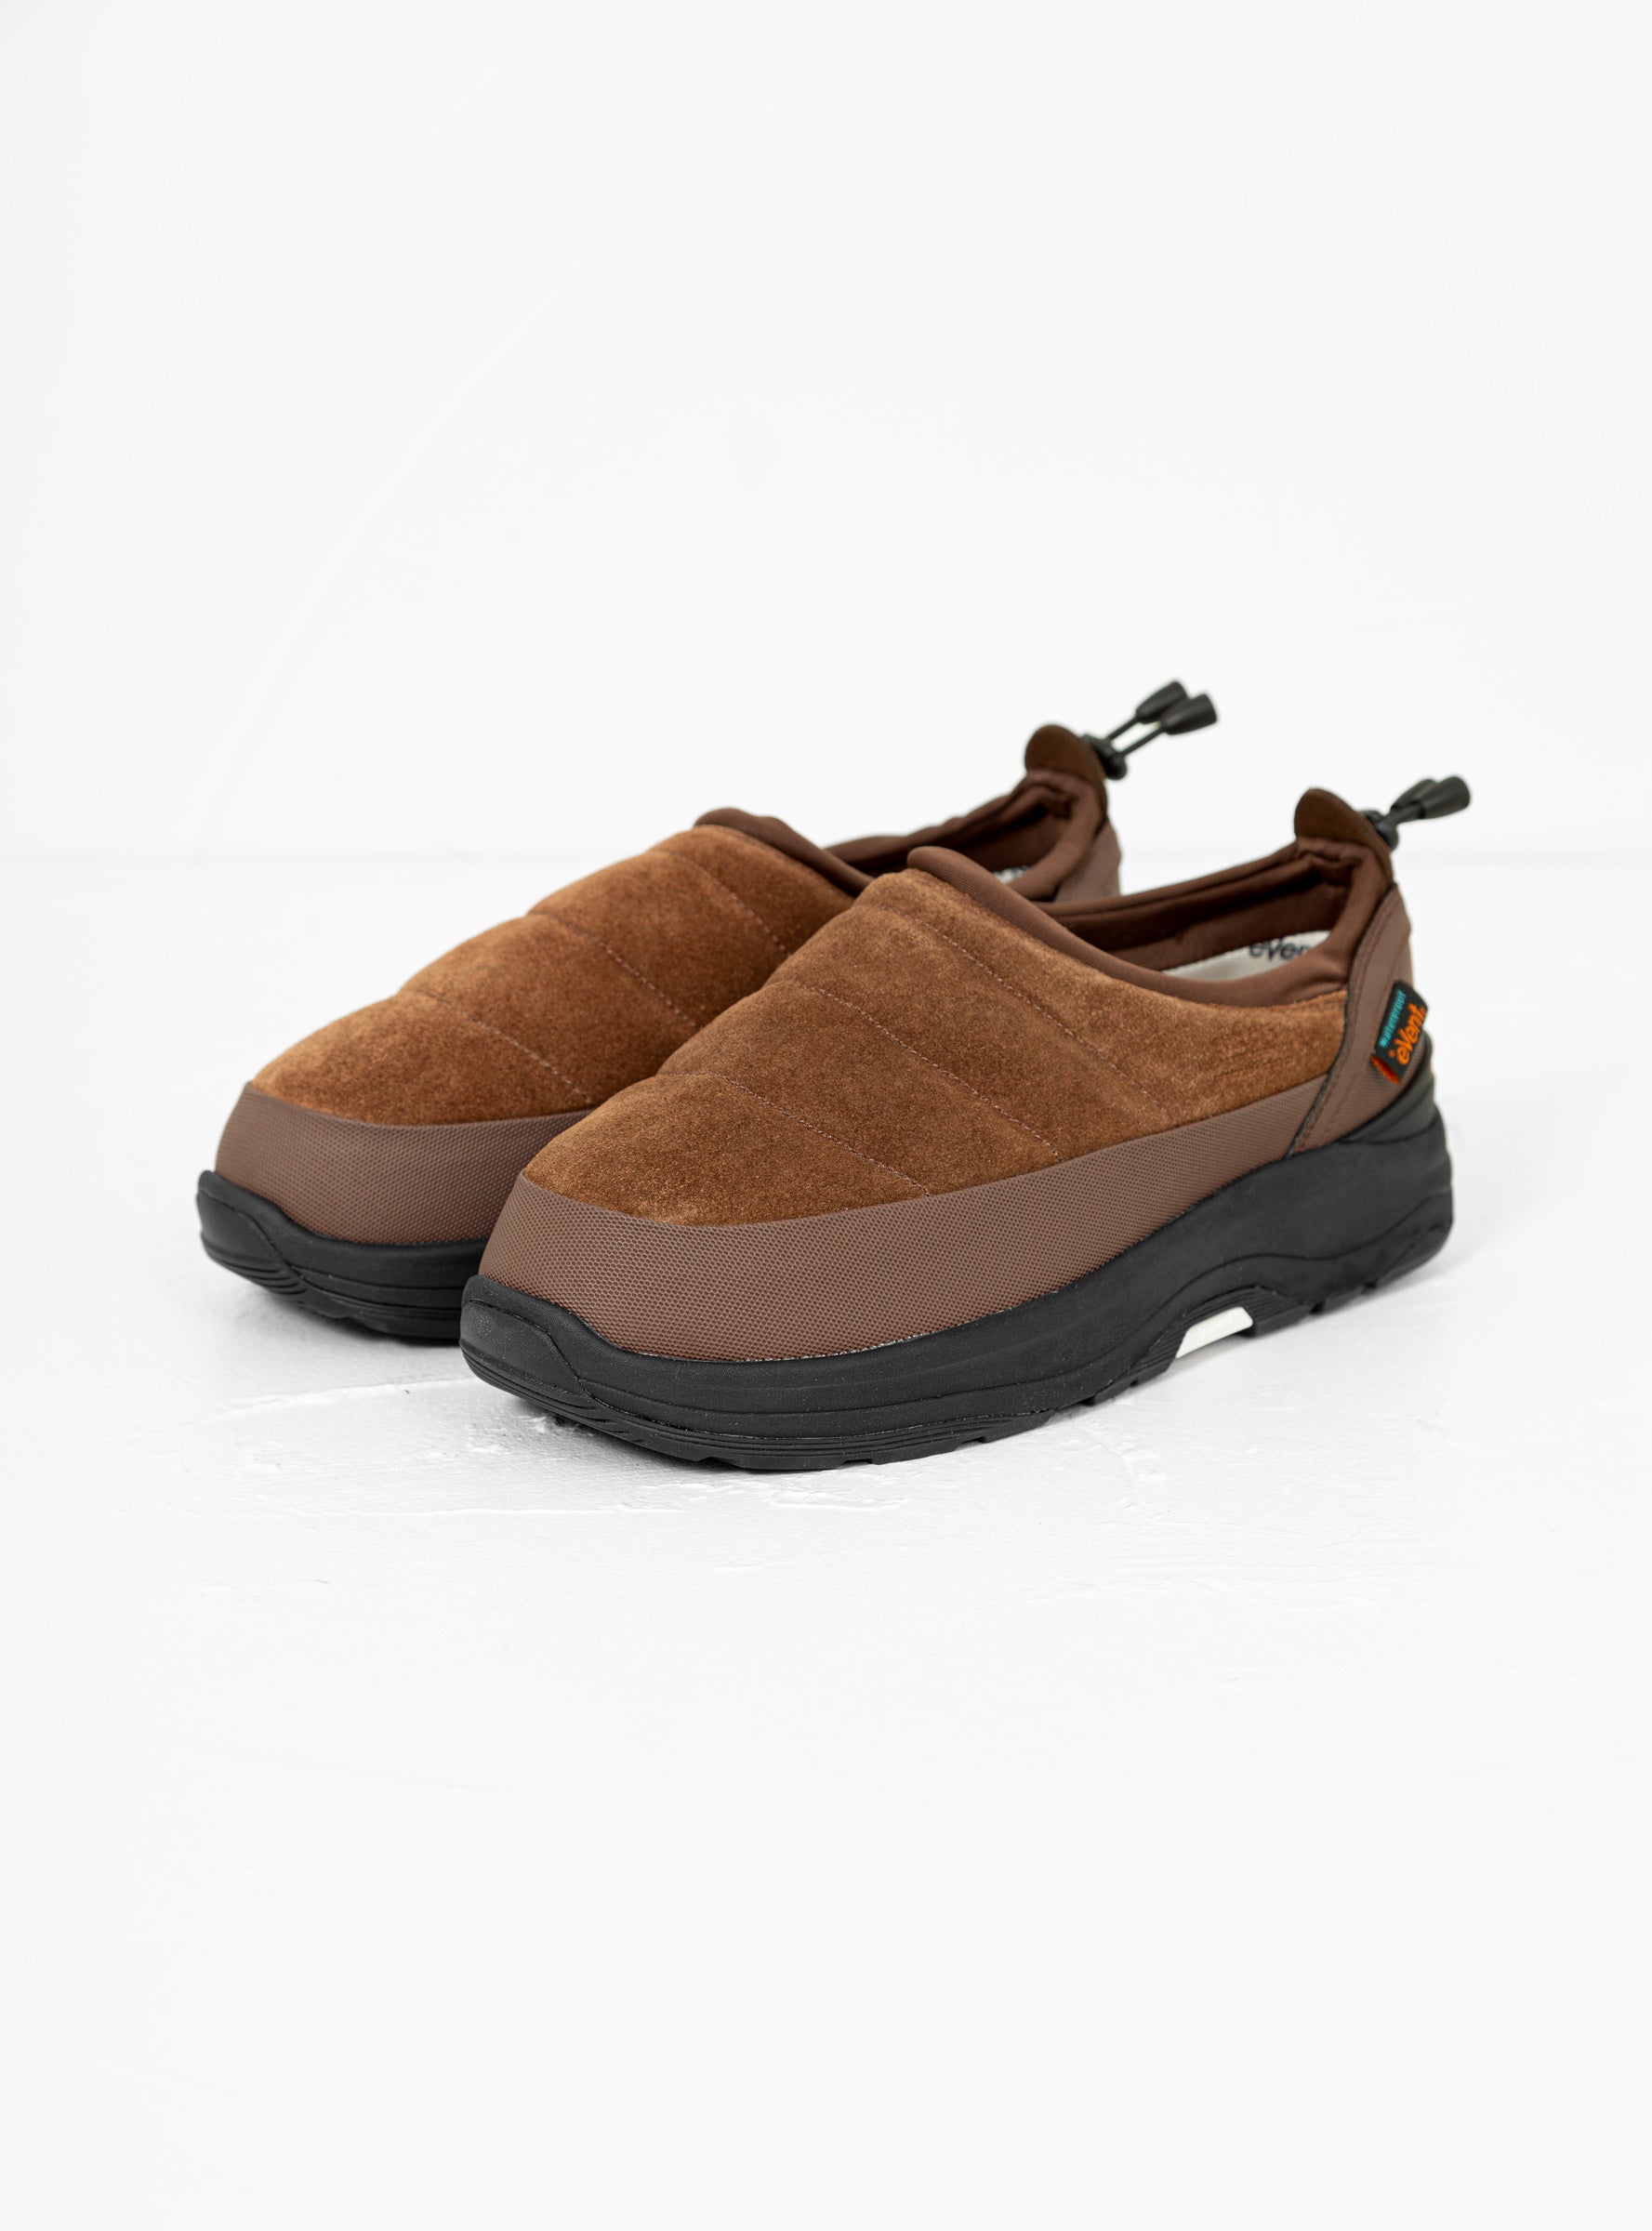 Suicoke Suicoke Pepper Sev Shoes Brown - Size: UK 9